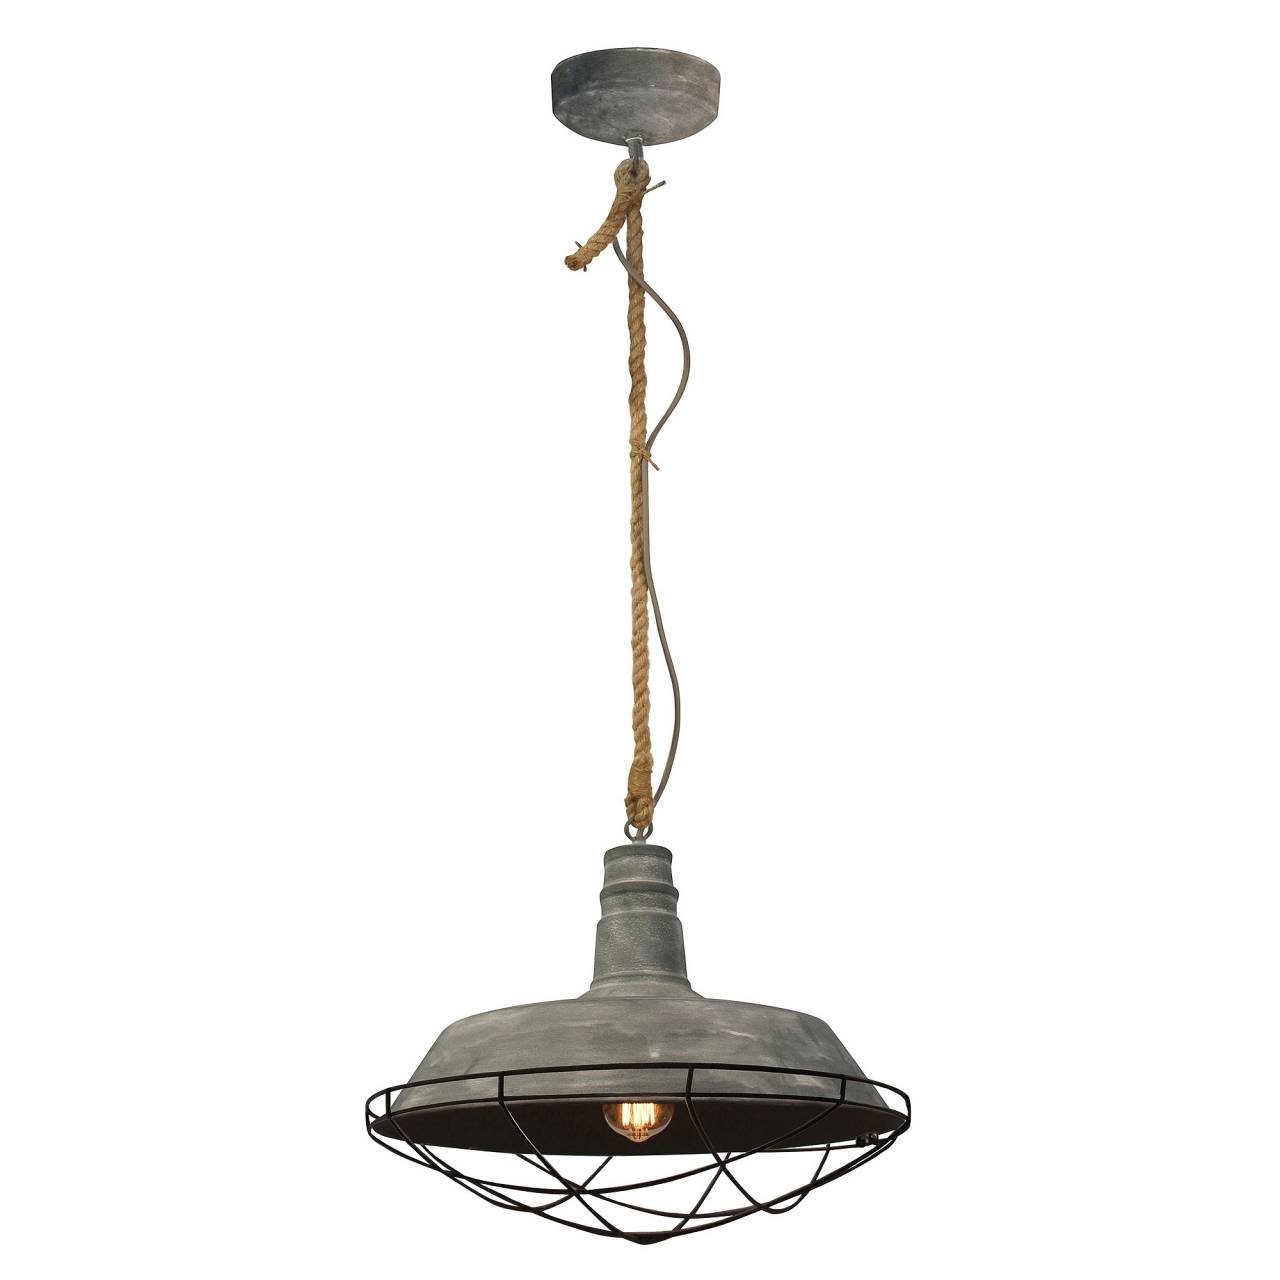 Lampe Brilliant 60W, Rope, 1x E27, Beton grau Pendelleuchte geeignet 47cm A60, Rope Pendelleuchte